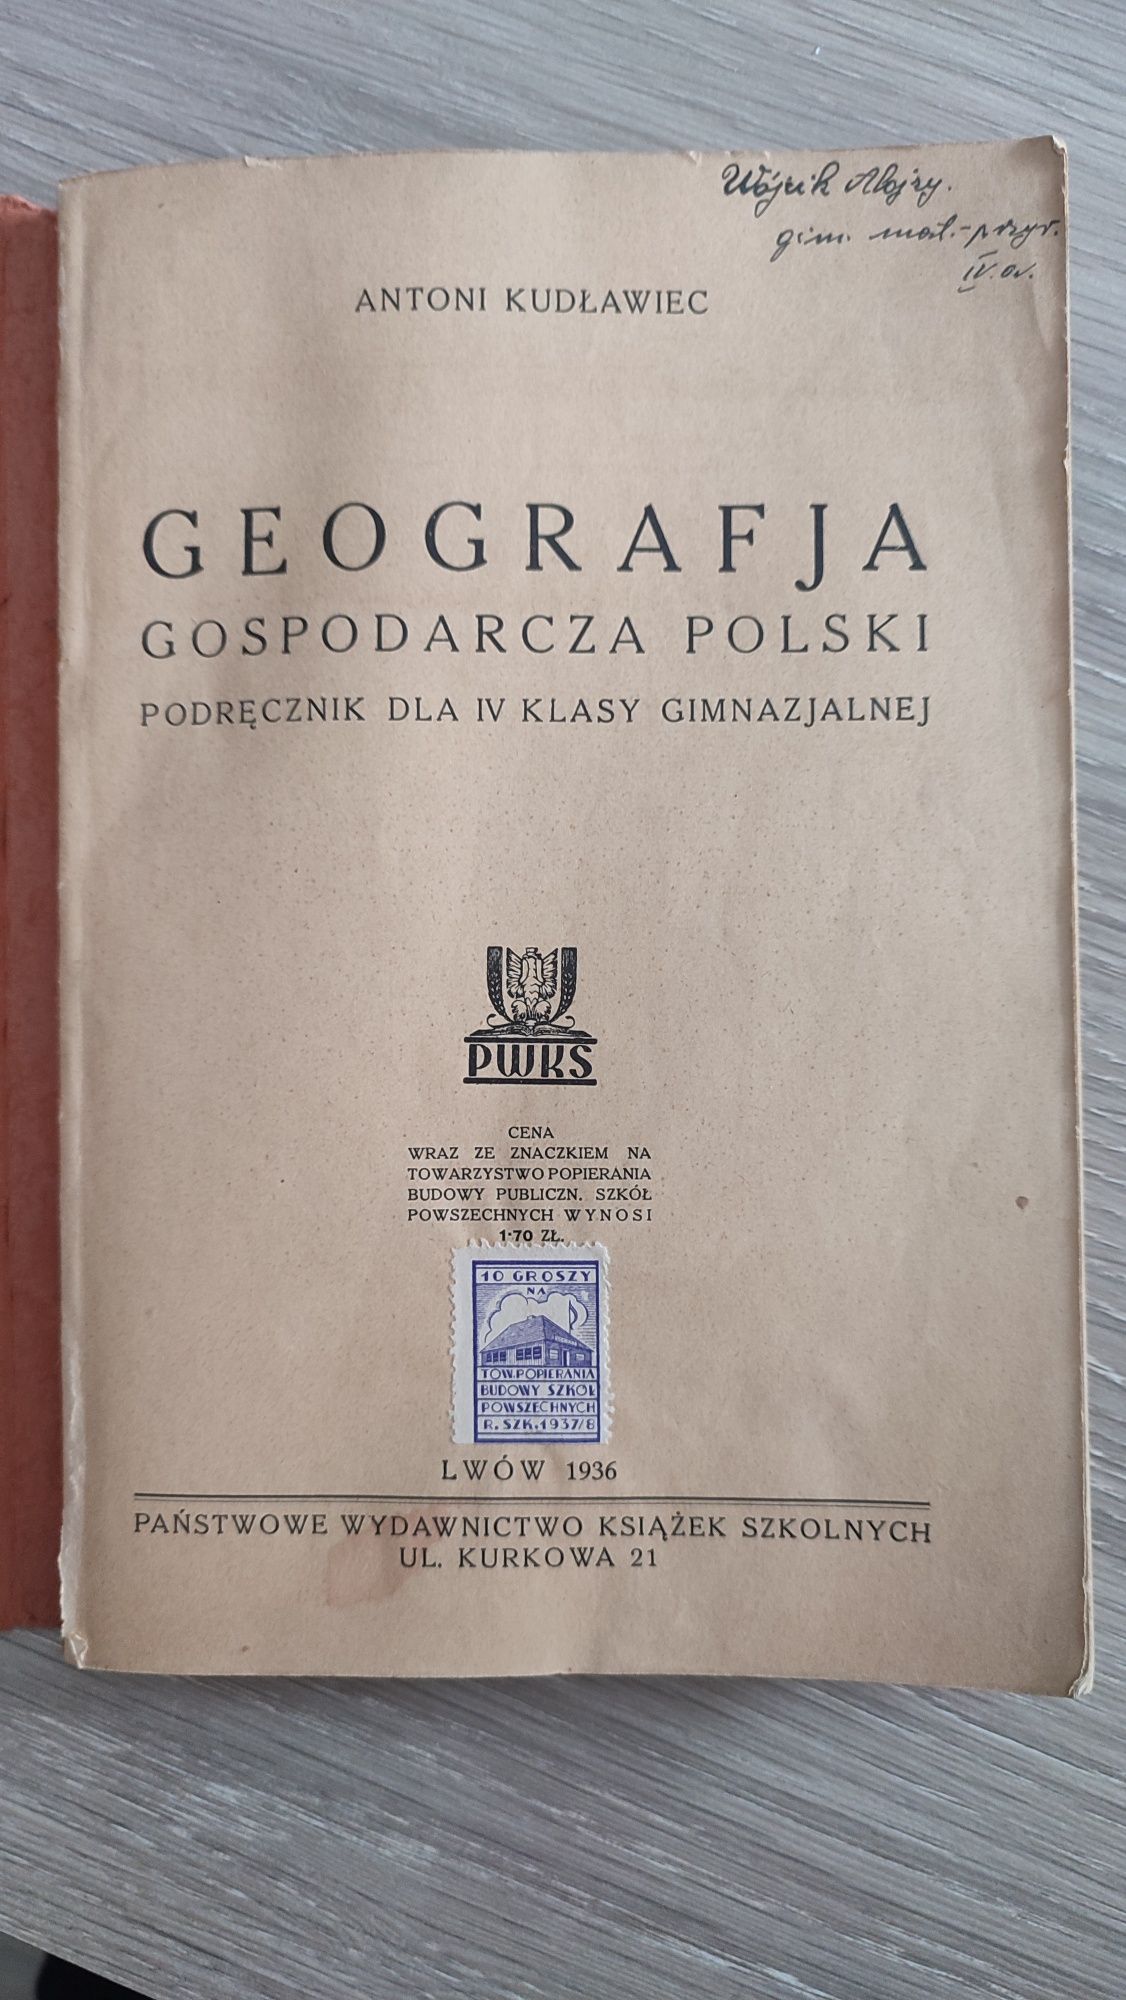 Geografja gospodarcza Polski